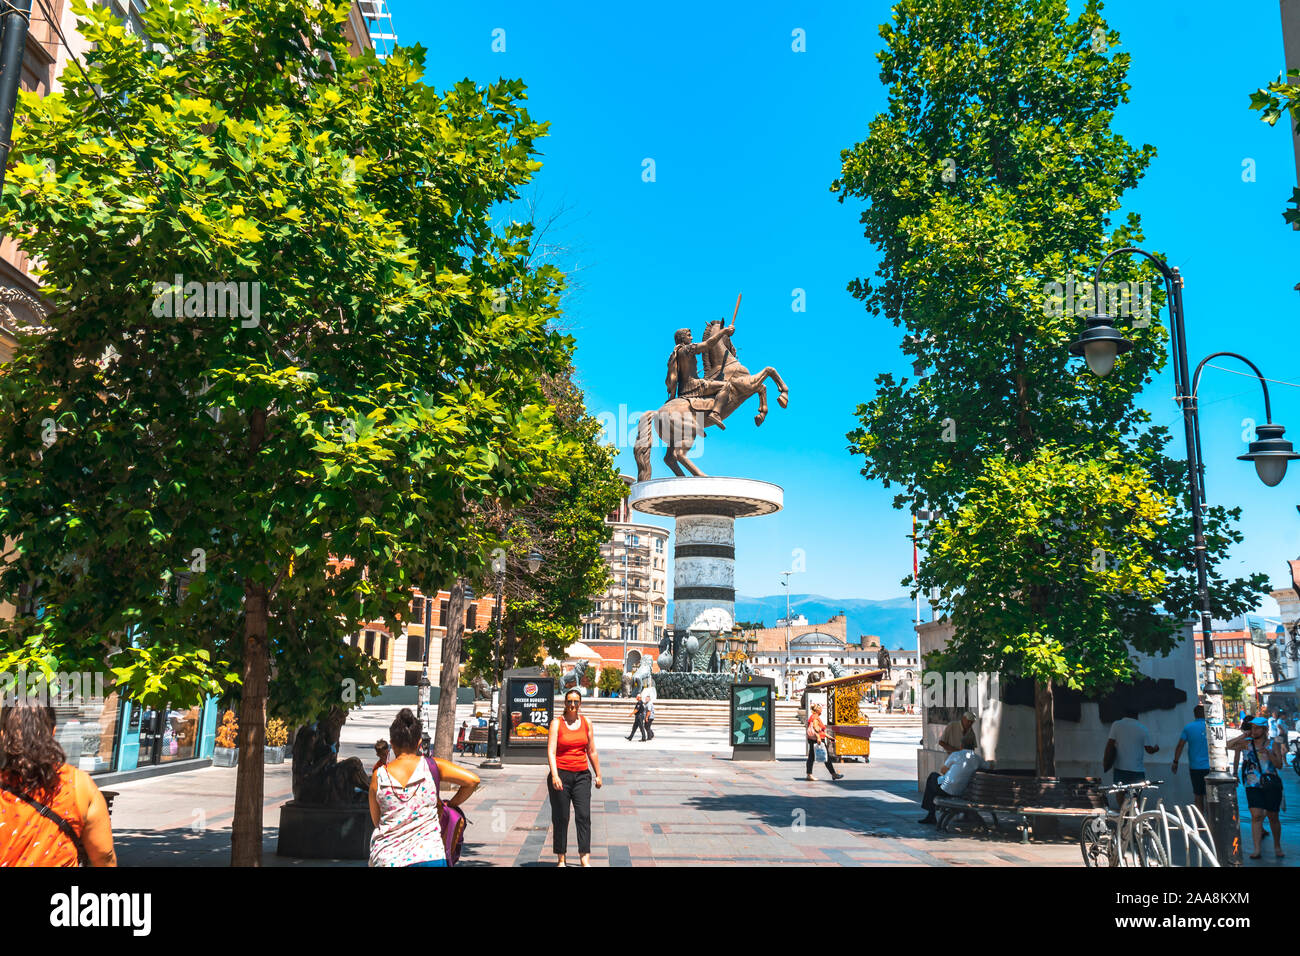 SKOPJE, MACEDONIA NORD - 8 agosto 2019 : centro città di Skopje con sculture e edifici. A Skopje è la città capitale della Macedonia. Foto Stock